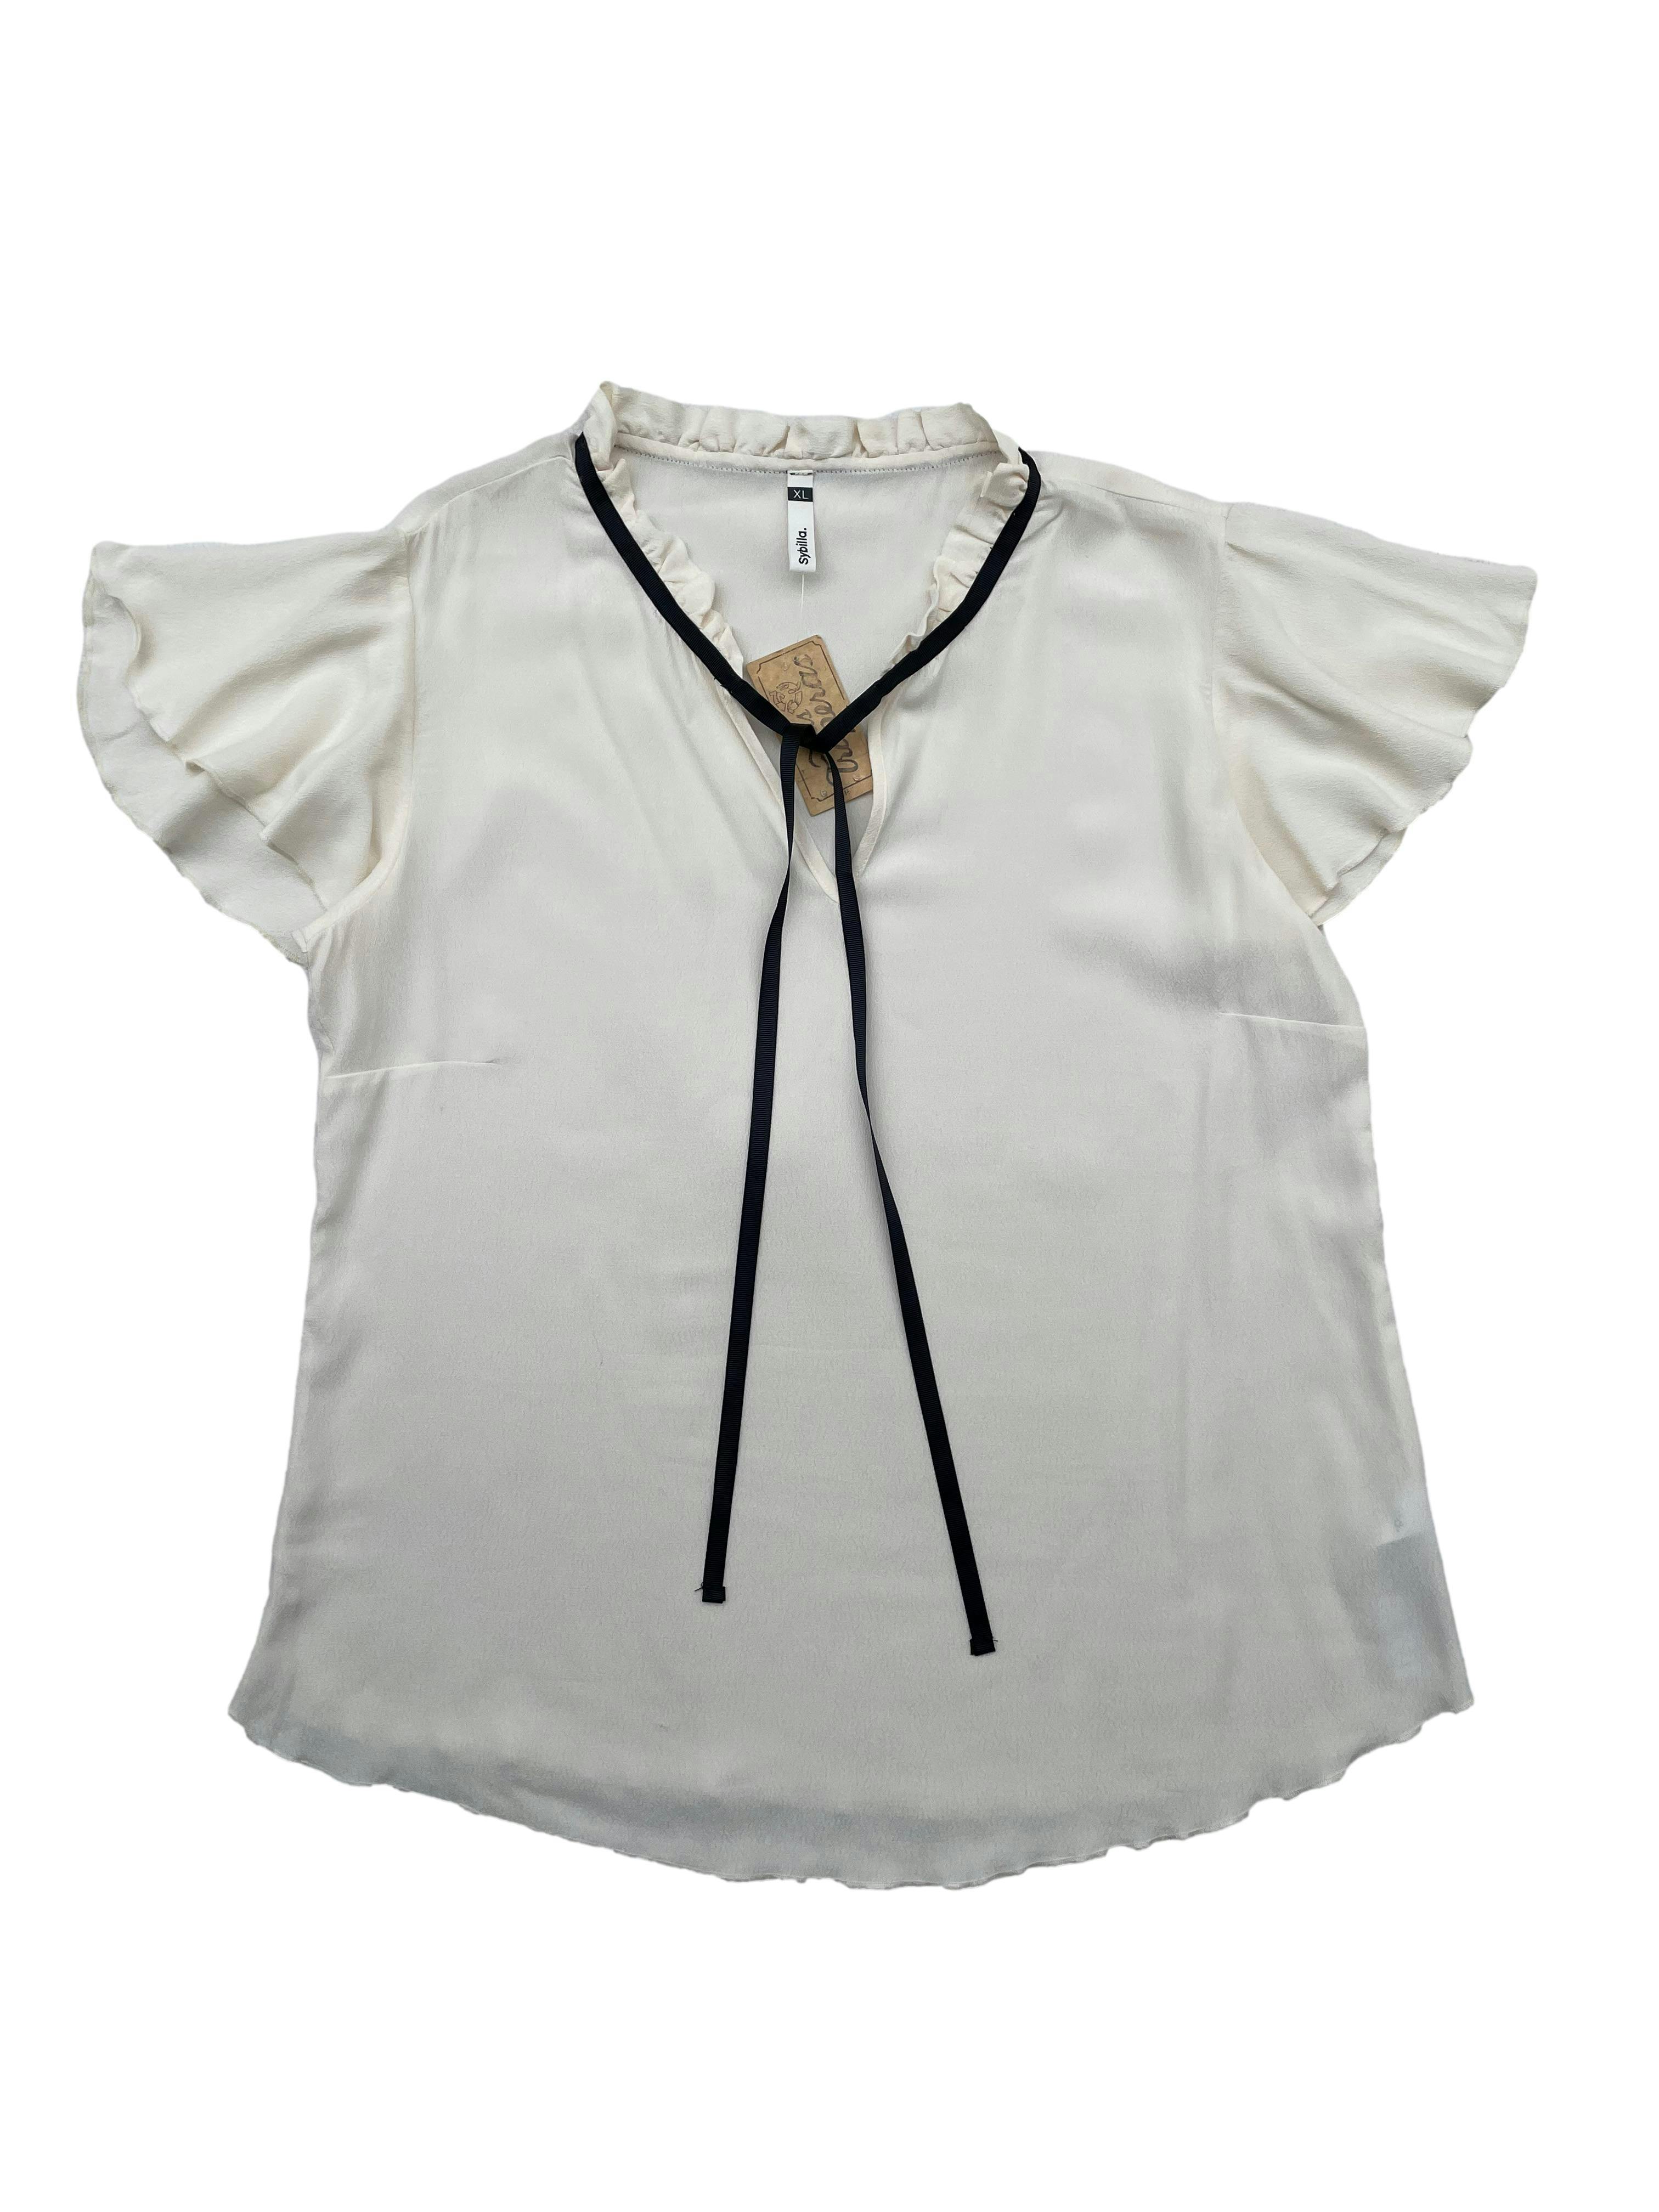 Blusa perla Sybilla de crepé con mangas volantes y listón al cuello. Busto 104cm, Largo 60cm.